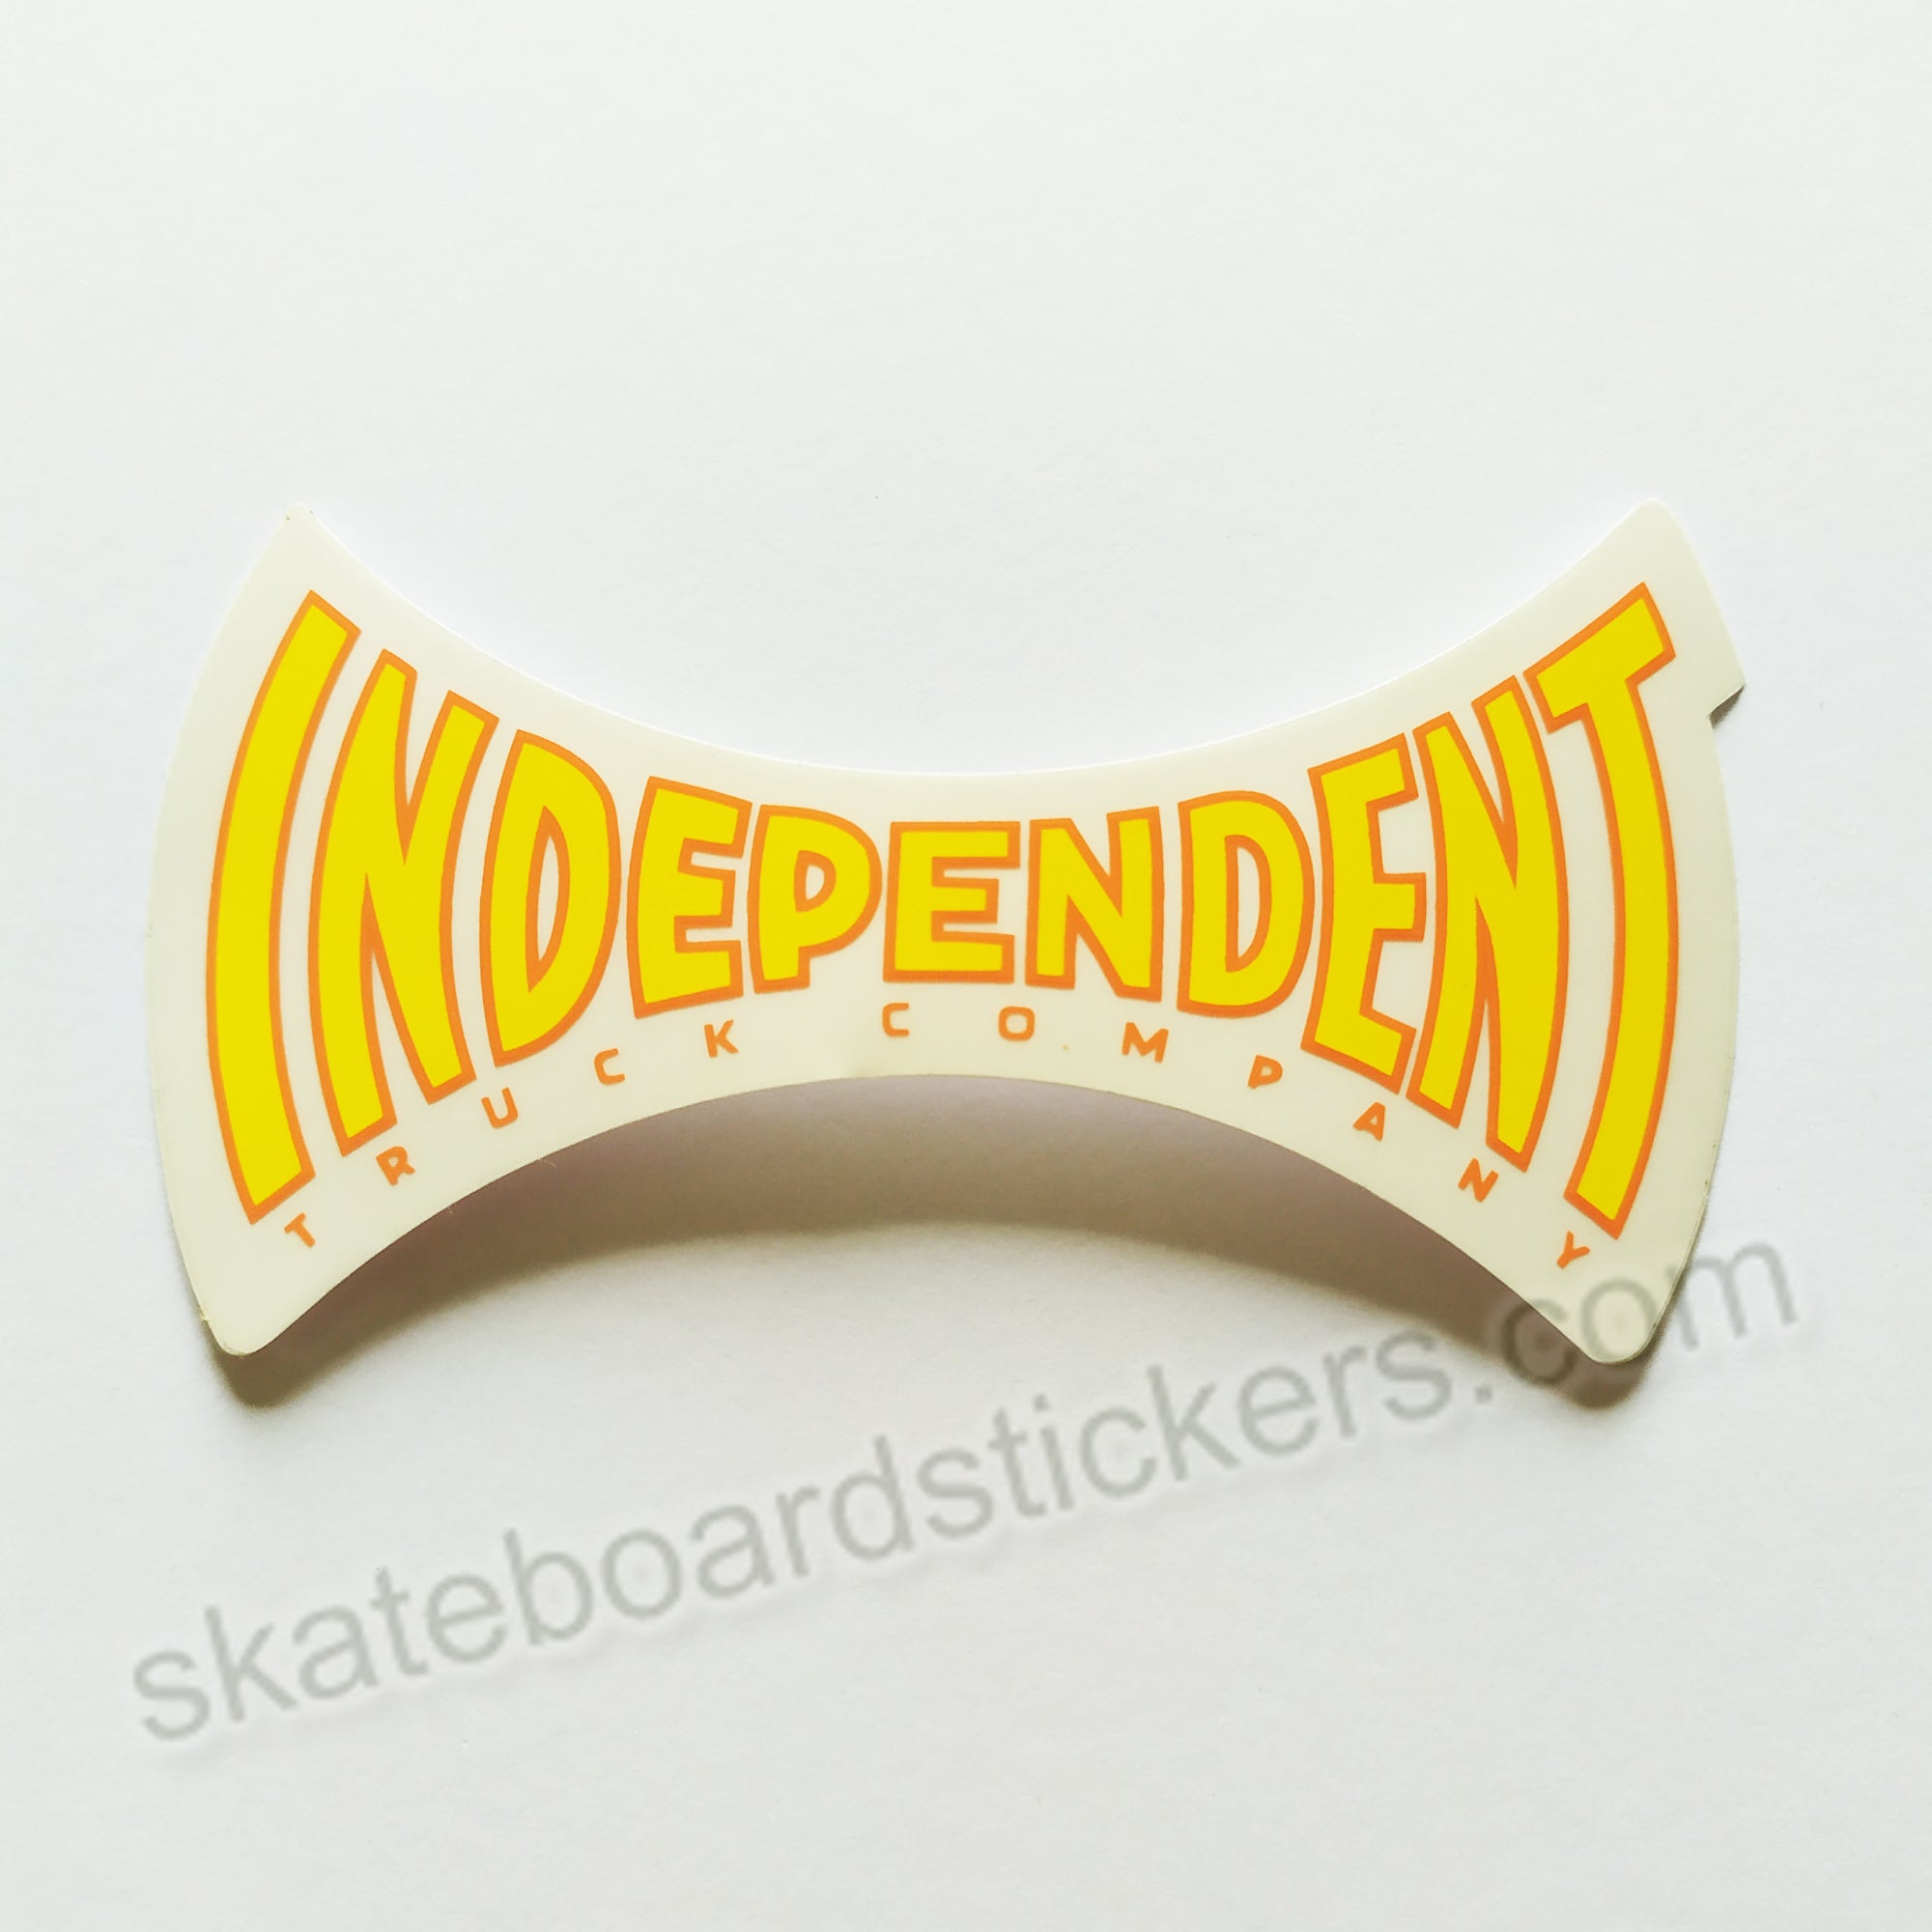 Independent Trucks Skateboard Sticker "Span"